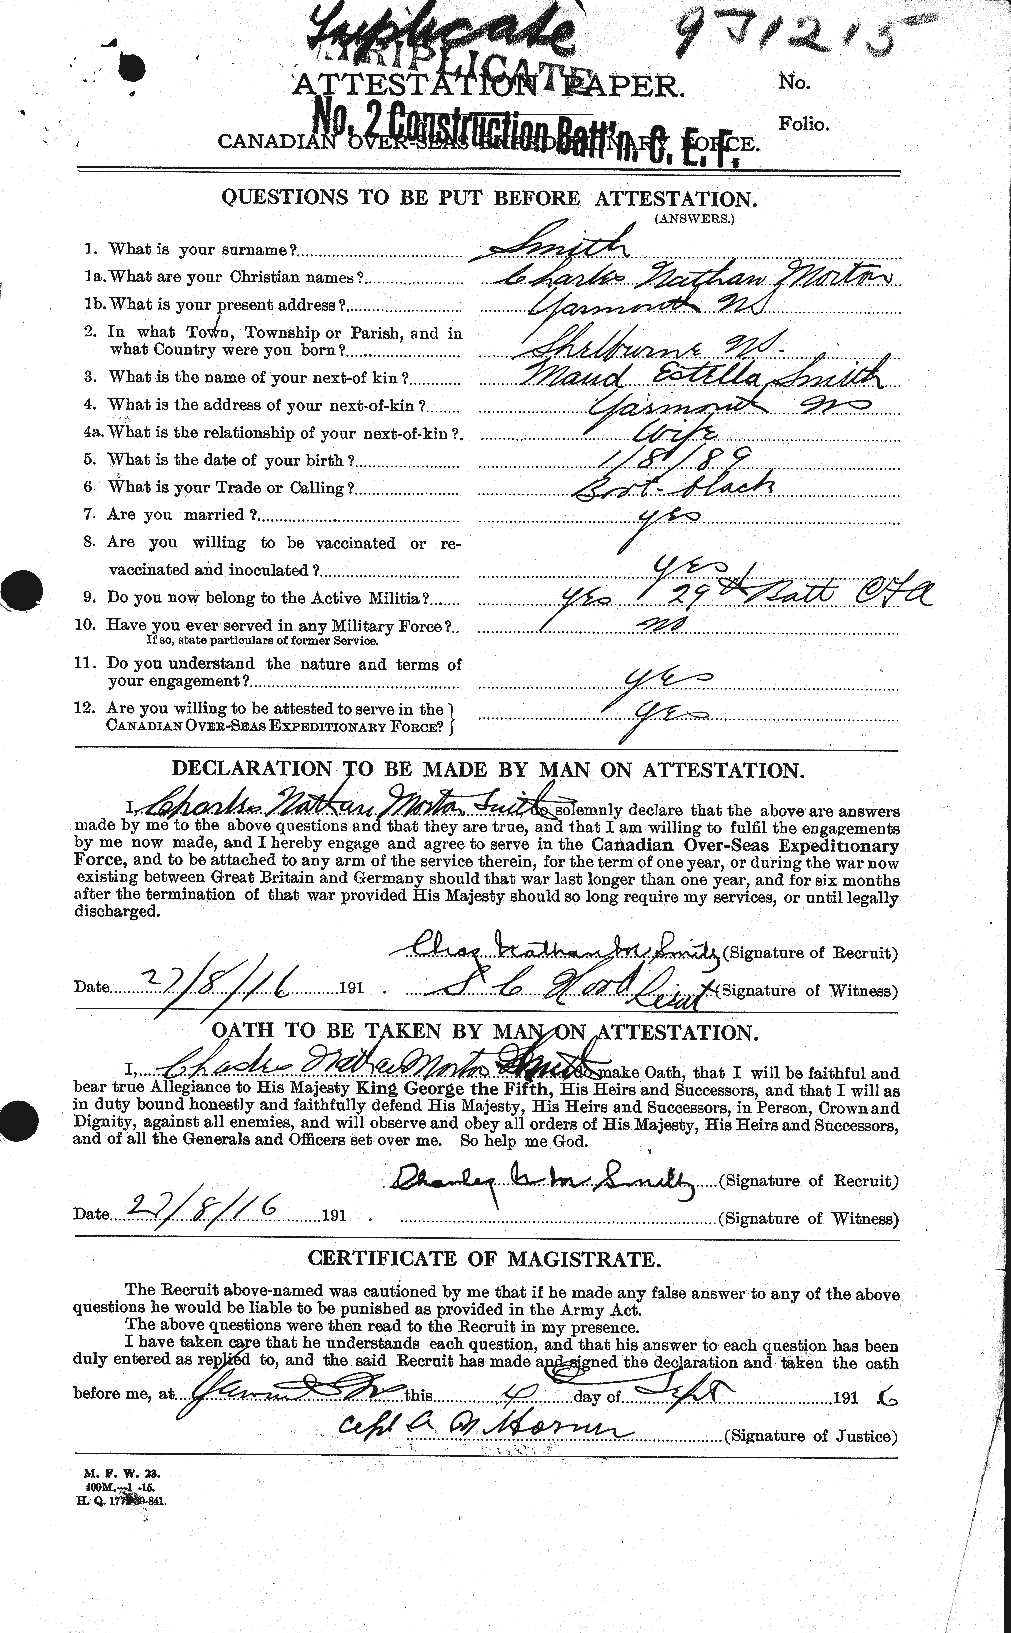 Dossiers du Personnel de la Première Guerre mondiale - CEC 104374a